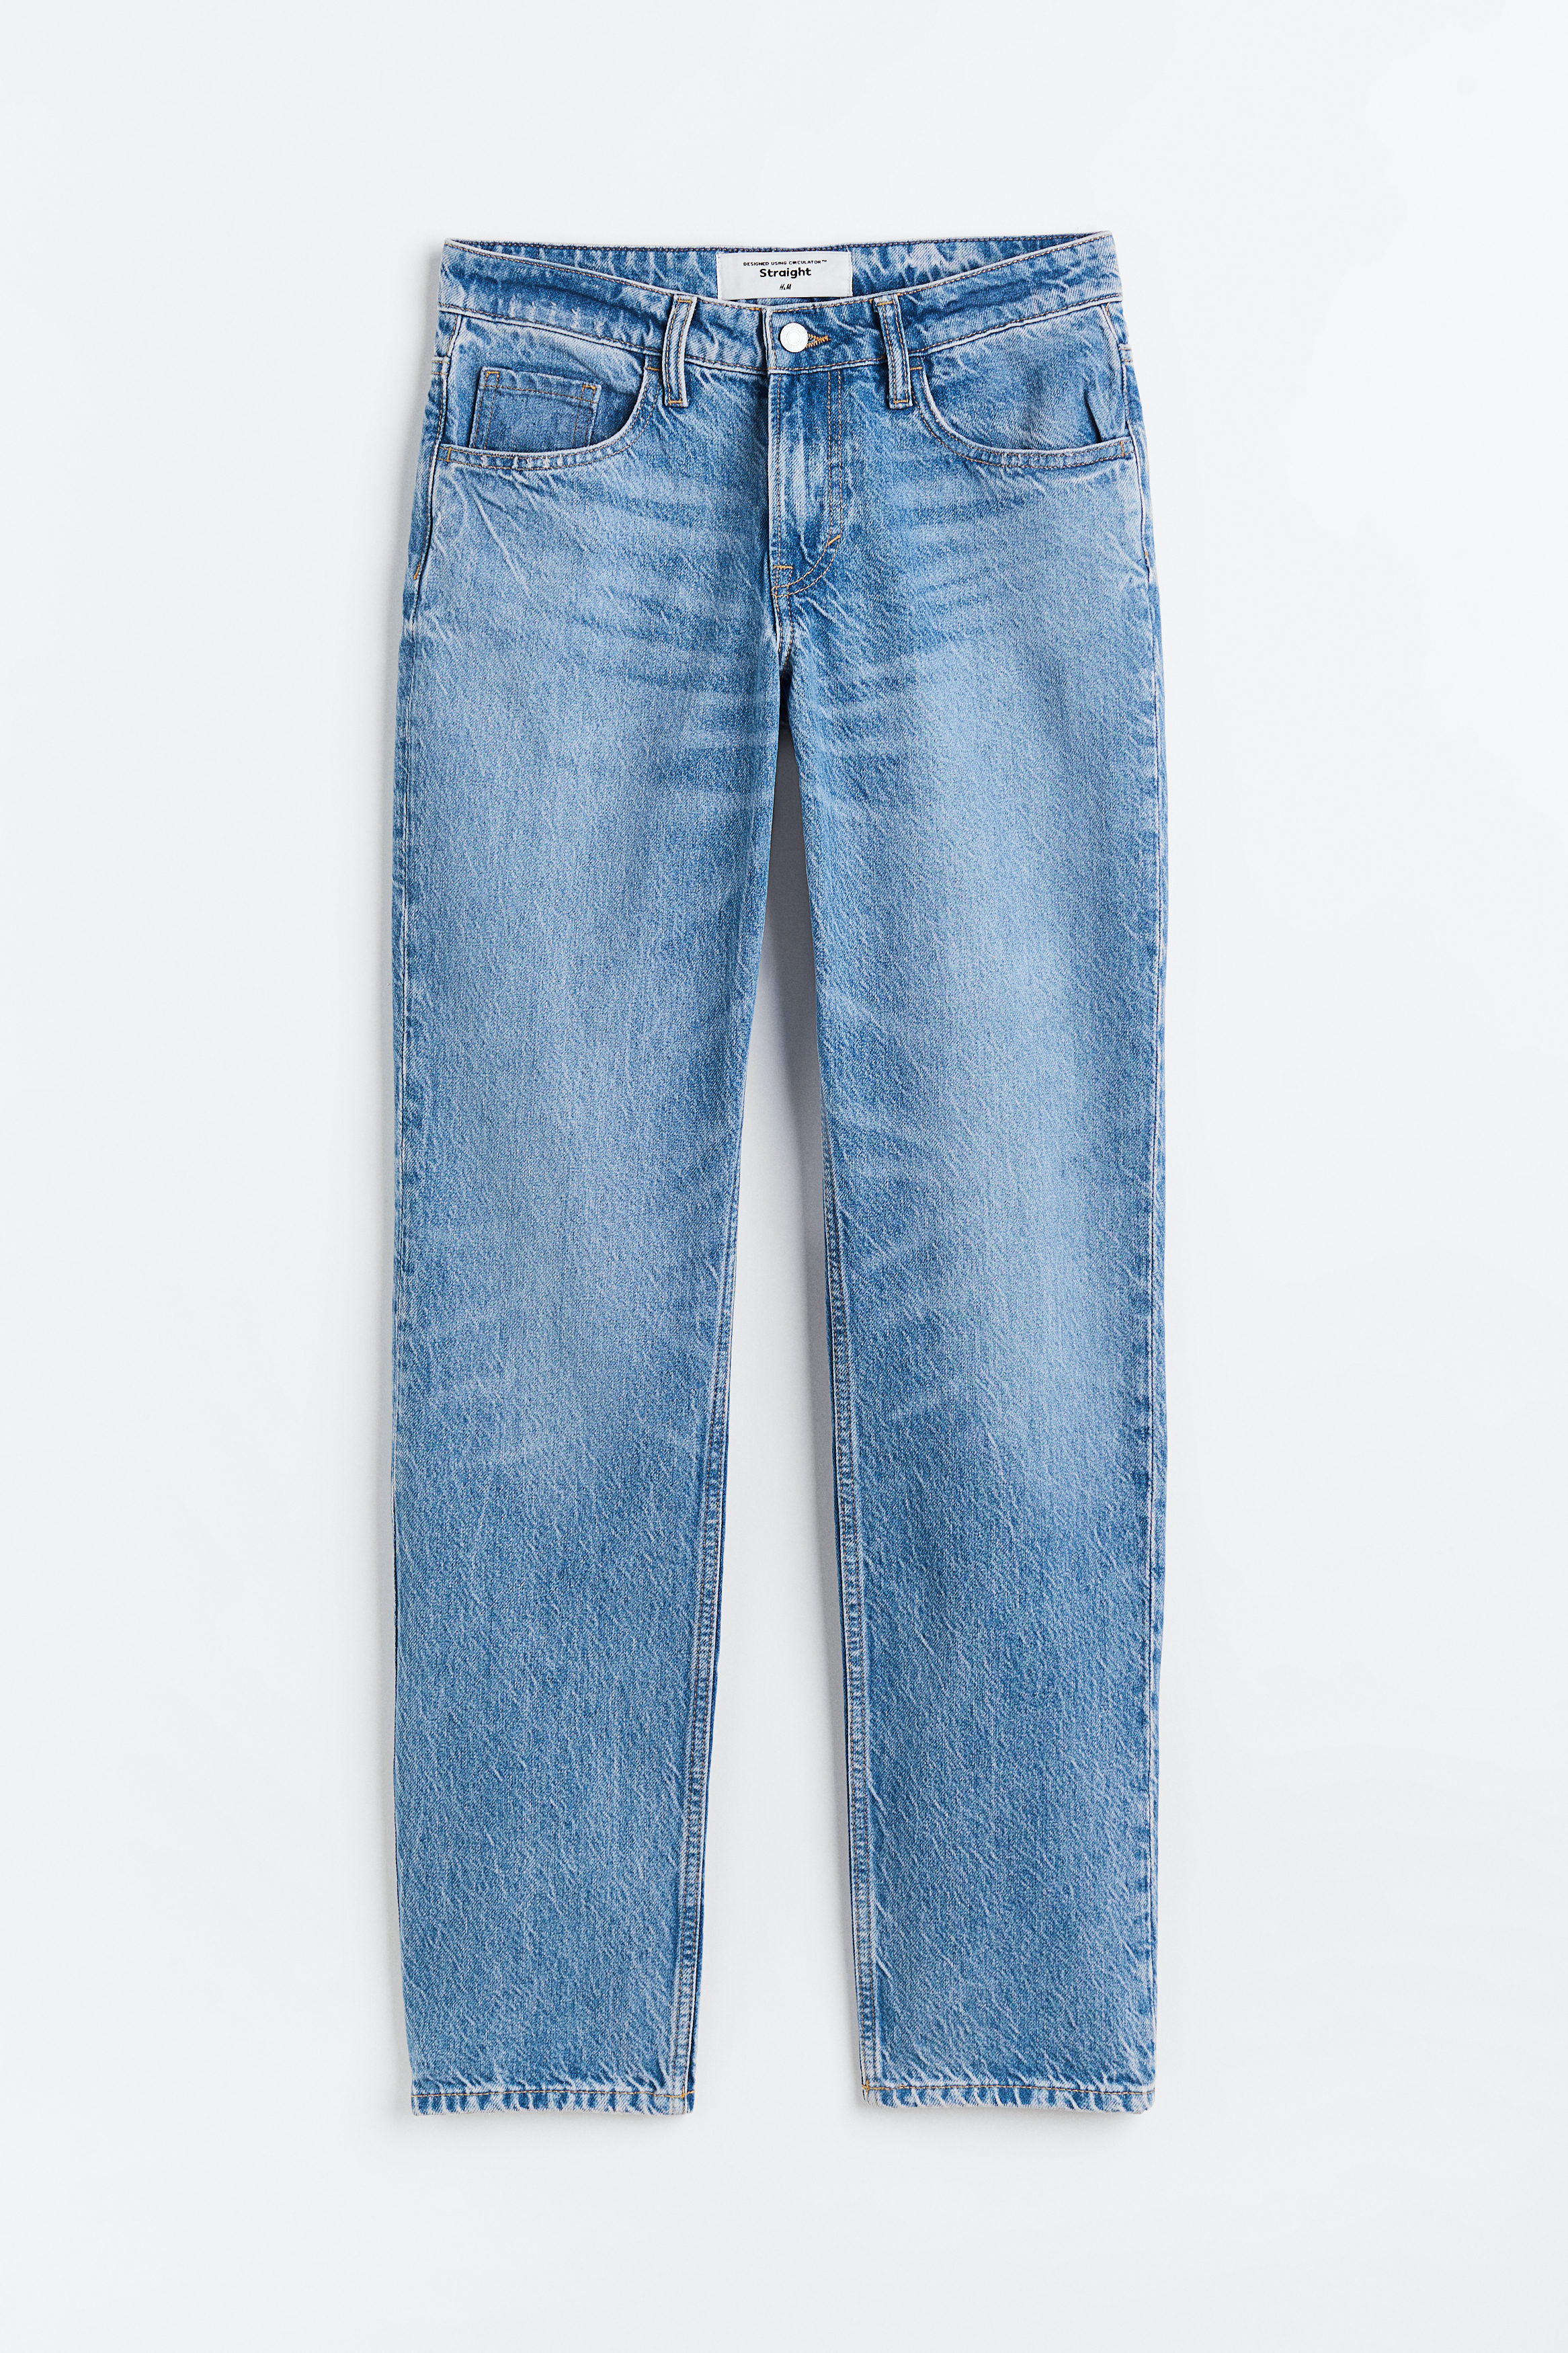 Billede af H&M Straight Regular Jeans Denimblå, jeans. Farve: Denim blue 013 I størrelse 32